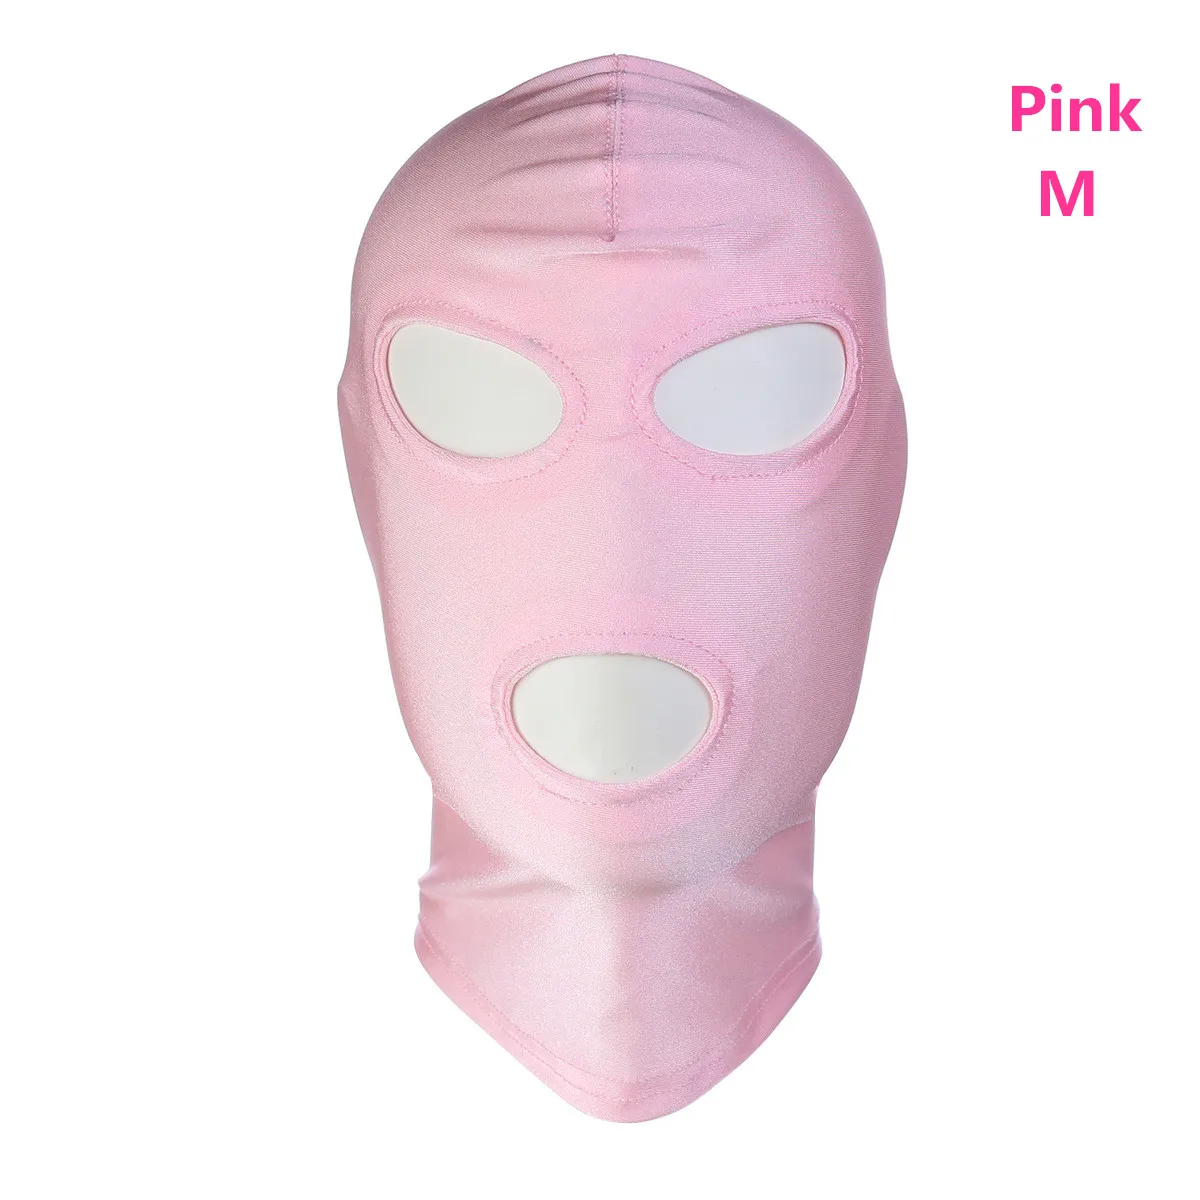 30 стилей, высокое качество, сексуальная, унисекс, дышащая маска с капюшоном для БДСМ, связывание, ролевые игры, косплей, костюм для вечеринки на Хэллоуин, ночное белье - Цвет: Pink A M